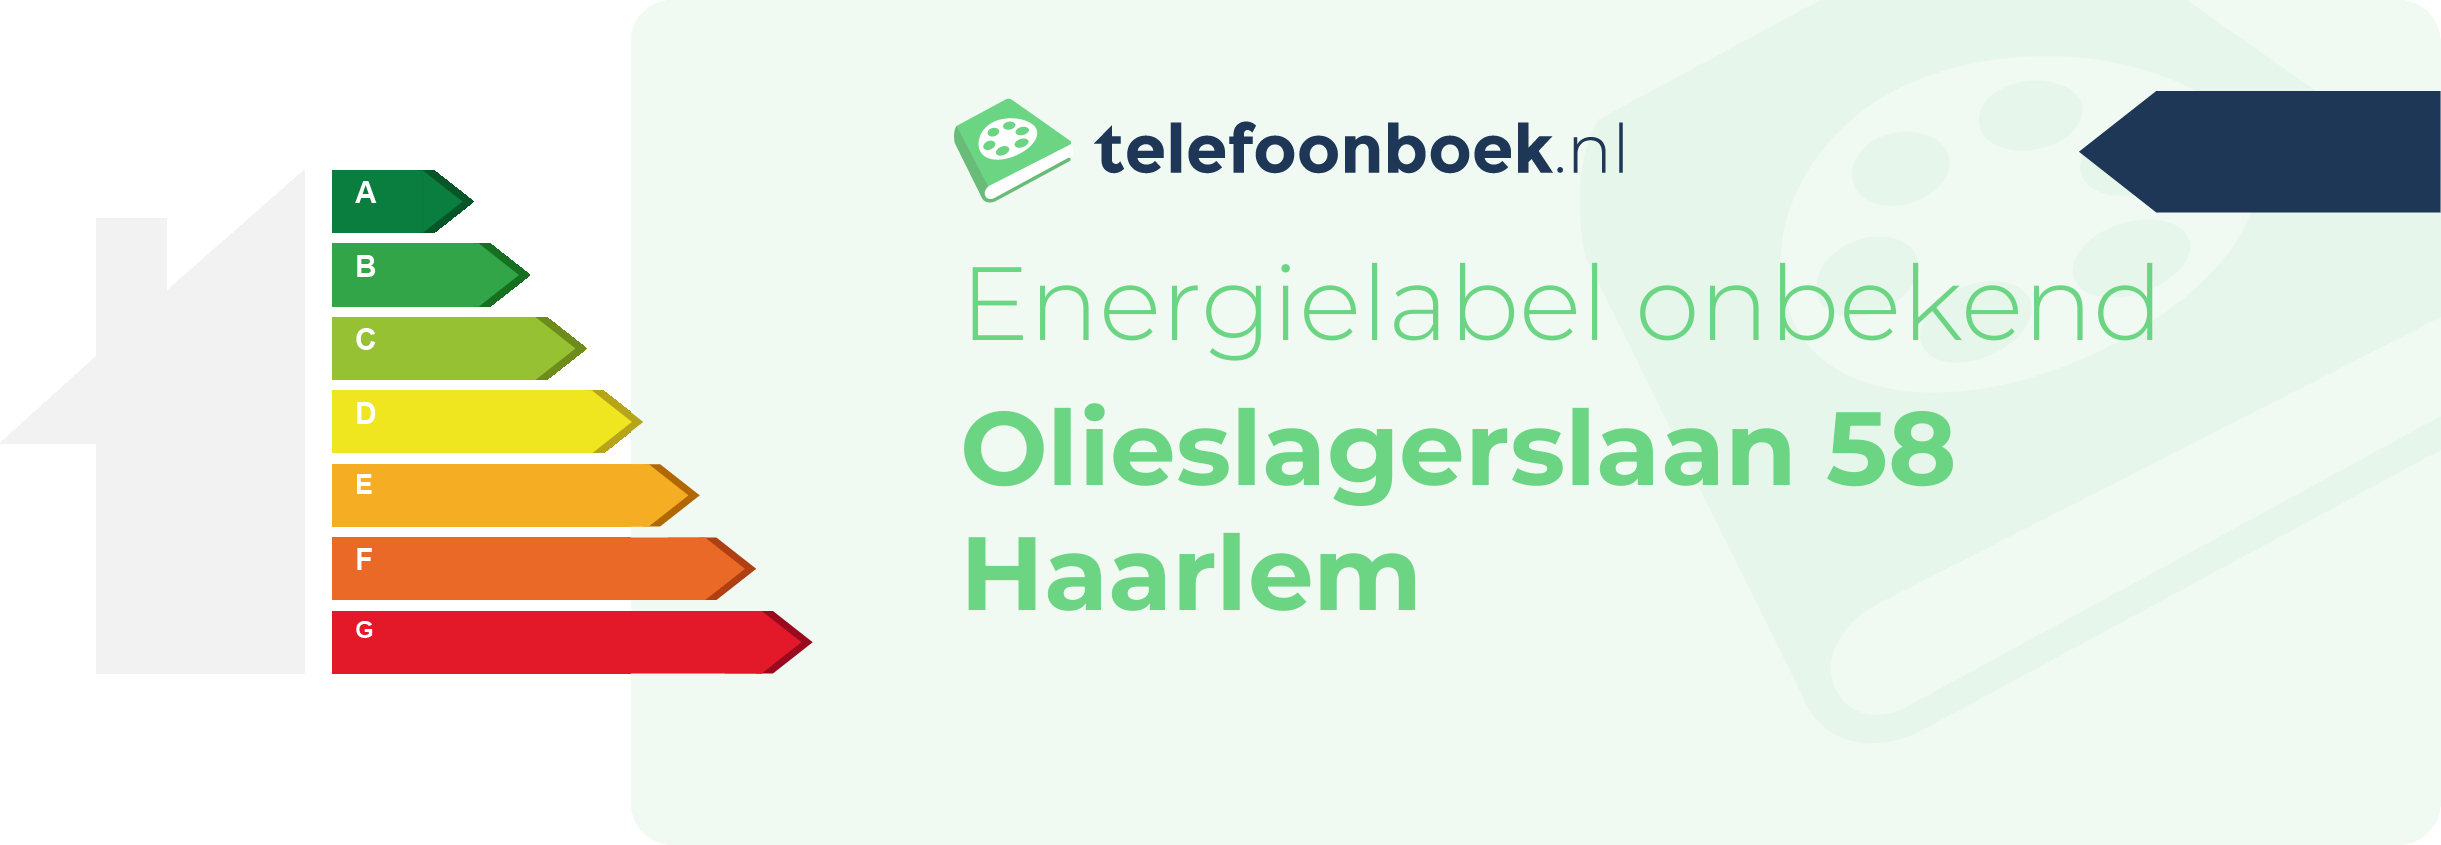 Energielabel Olieslagerslaan 58 Haarlem